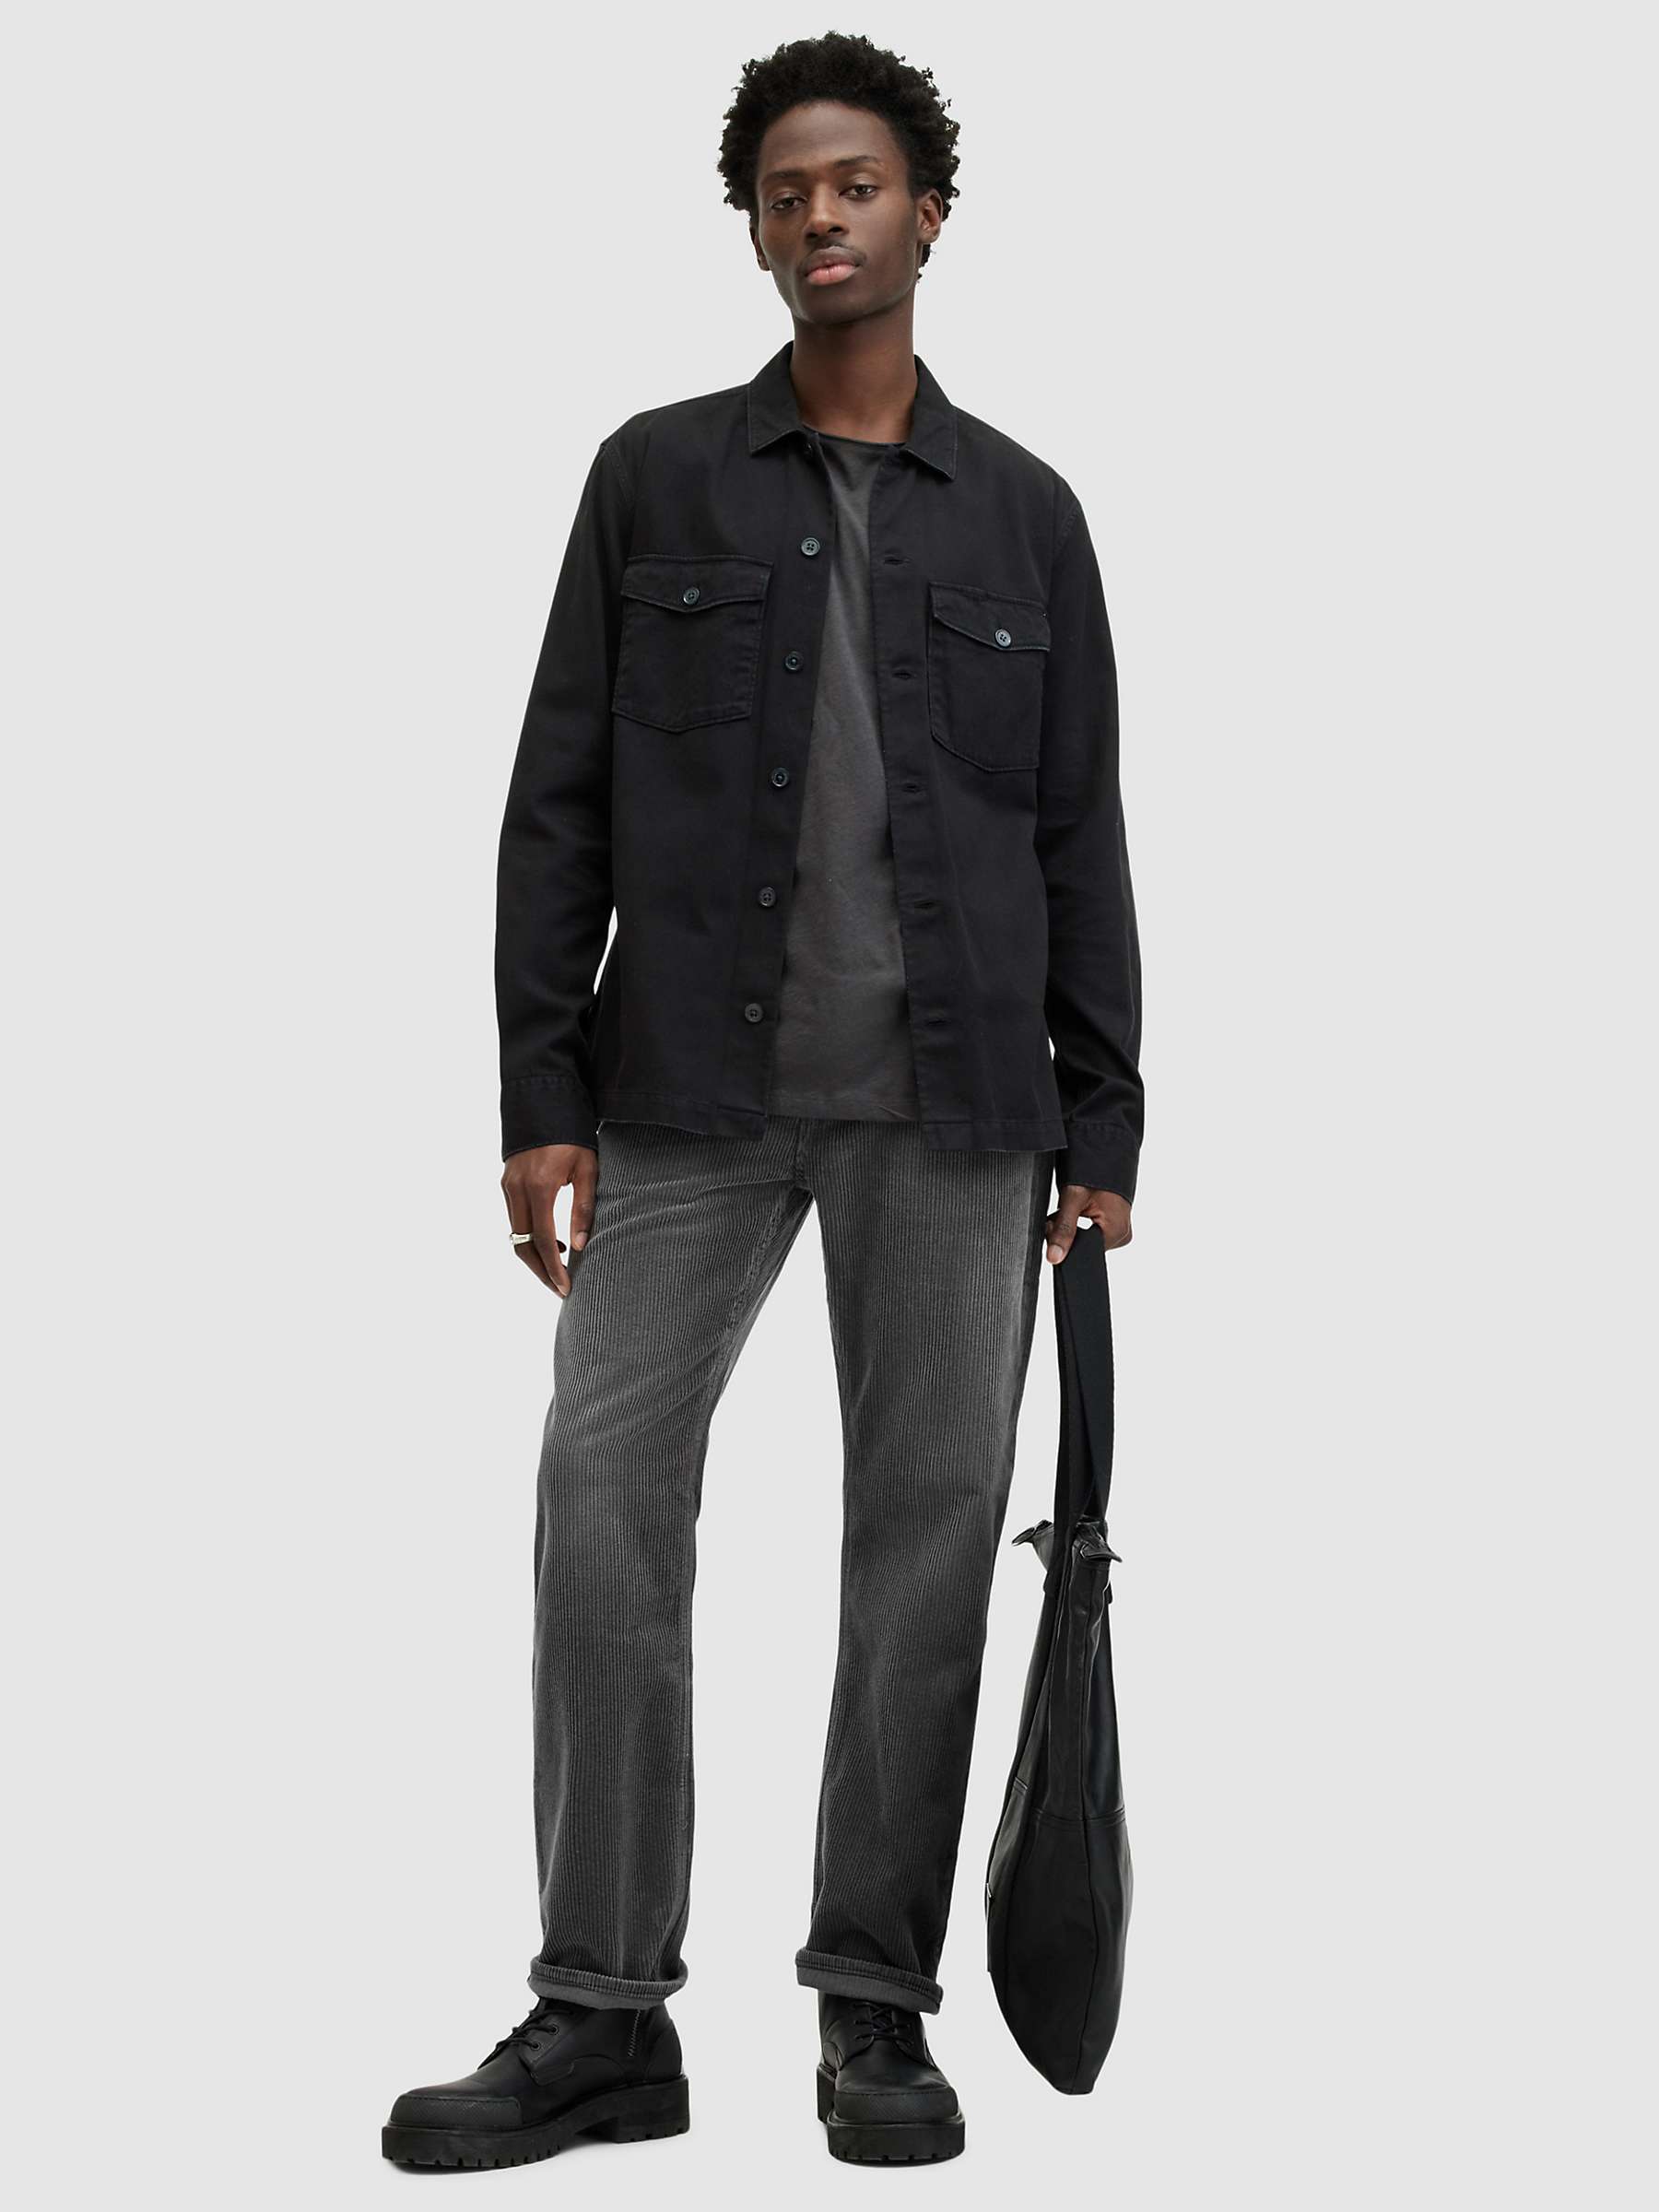 Buy AllSaints Curtis Slim Fit Jeans, Black Online at johnlewis.com